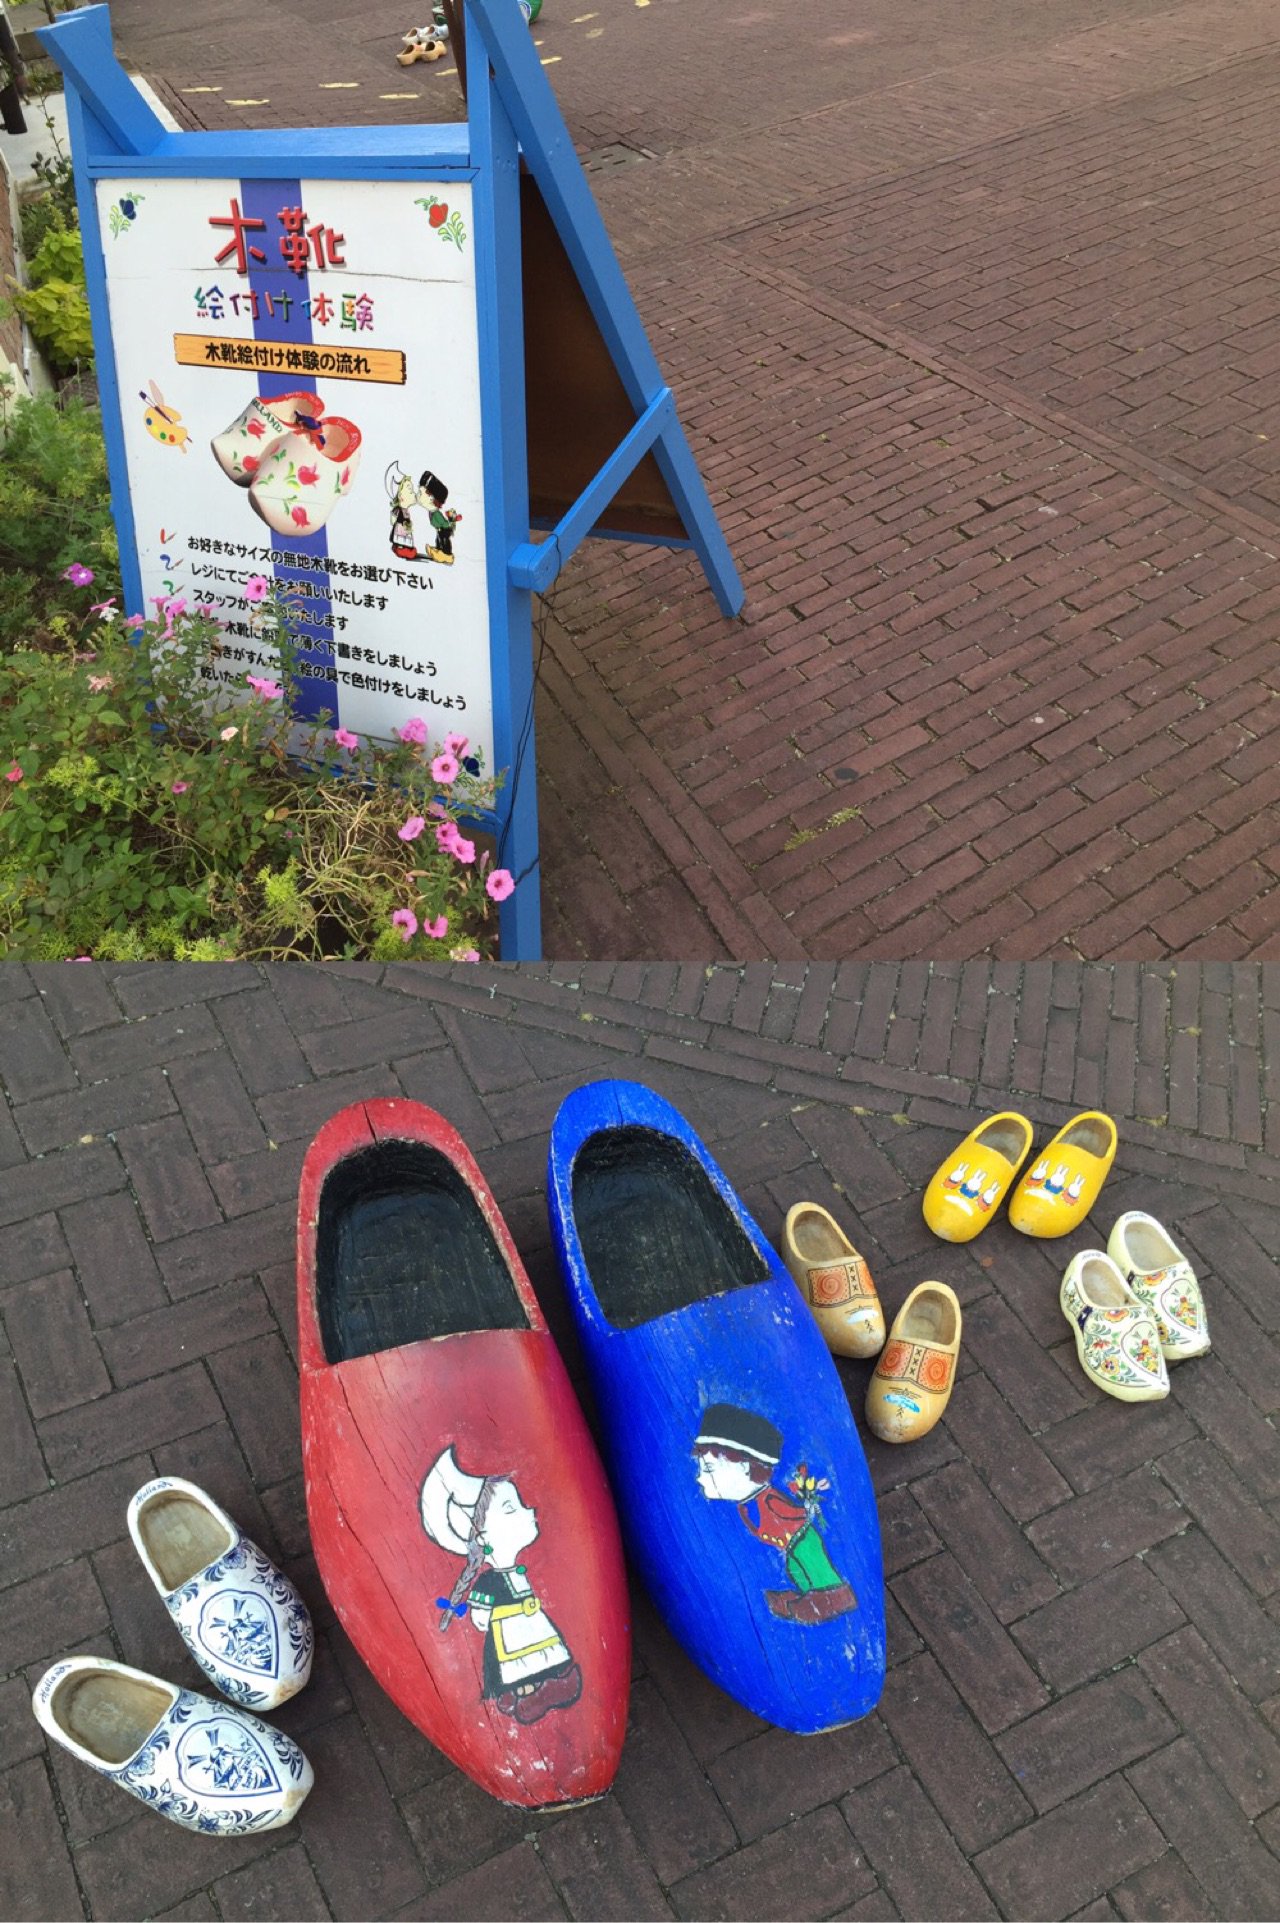 オランダ木靴 https://t.co/jHh5mXV0dB